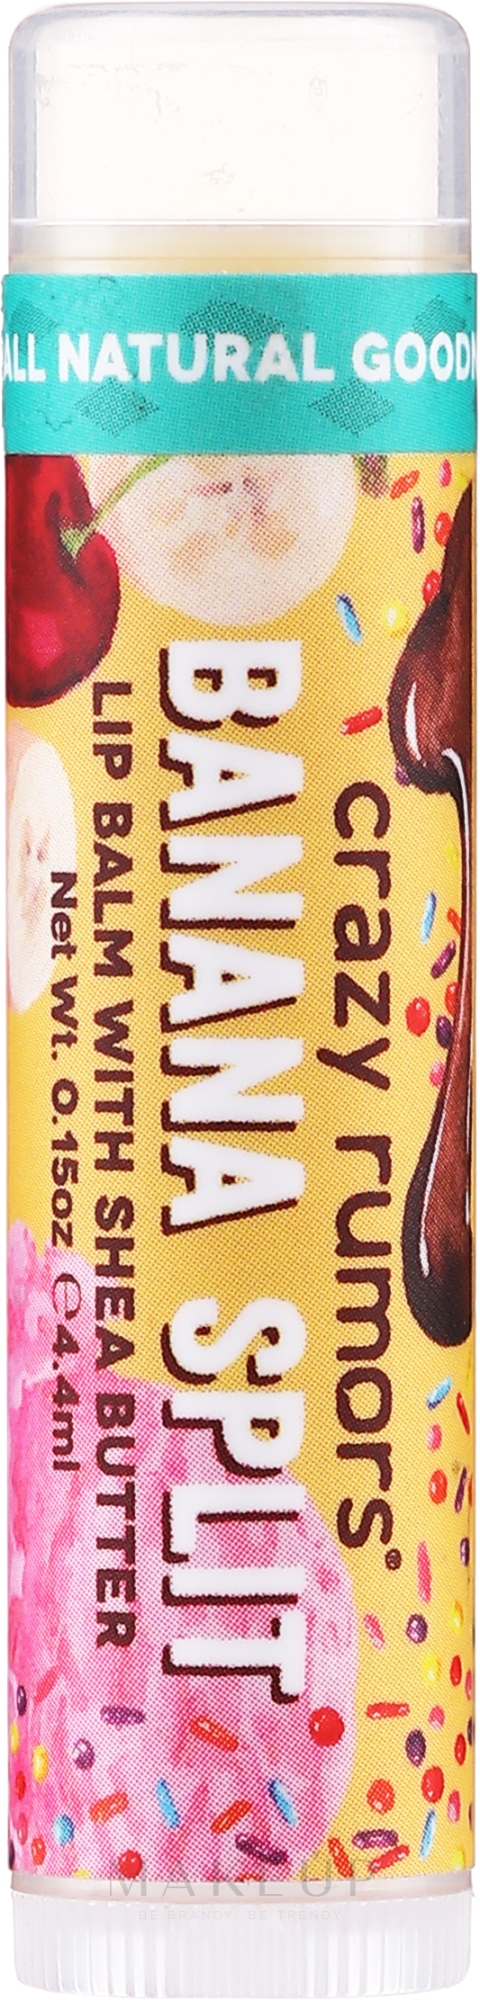 Lippenbalsam - Crazy Rumors Banana Split Lip Balm — Bild 4.25 ml